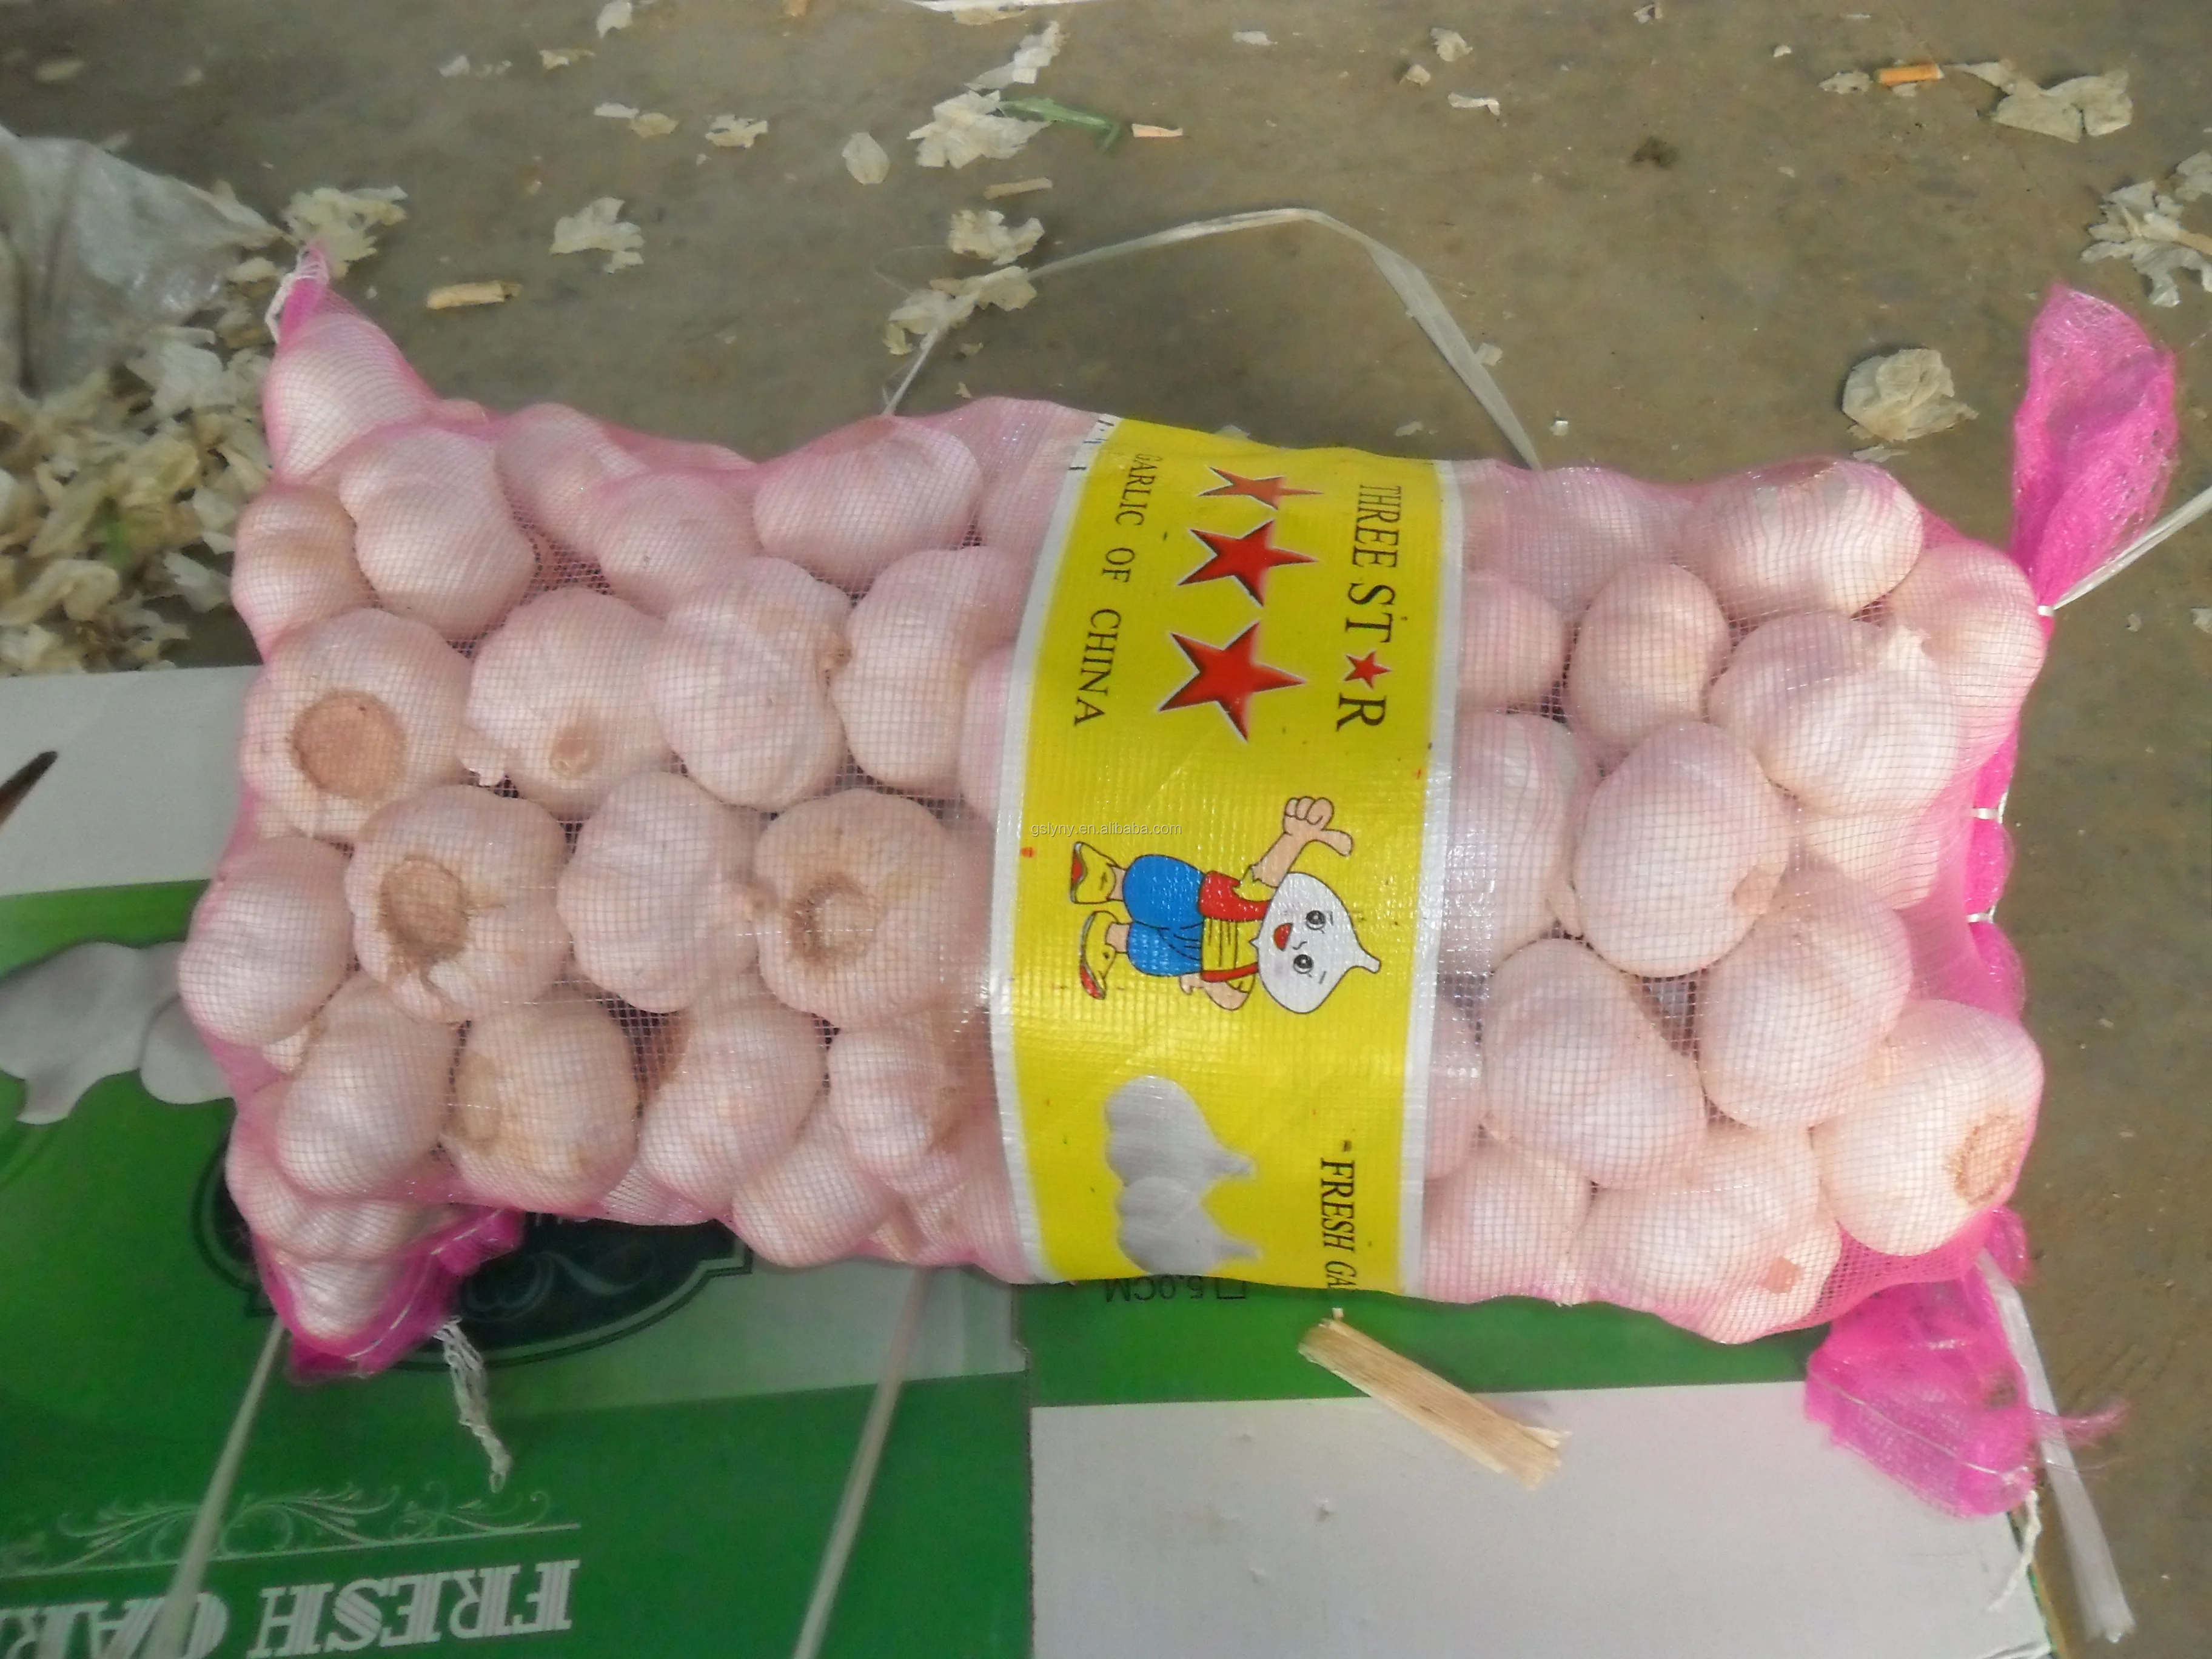 sariwang bawang at luya fresh garlic importer normal white pure white garlic price in china